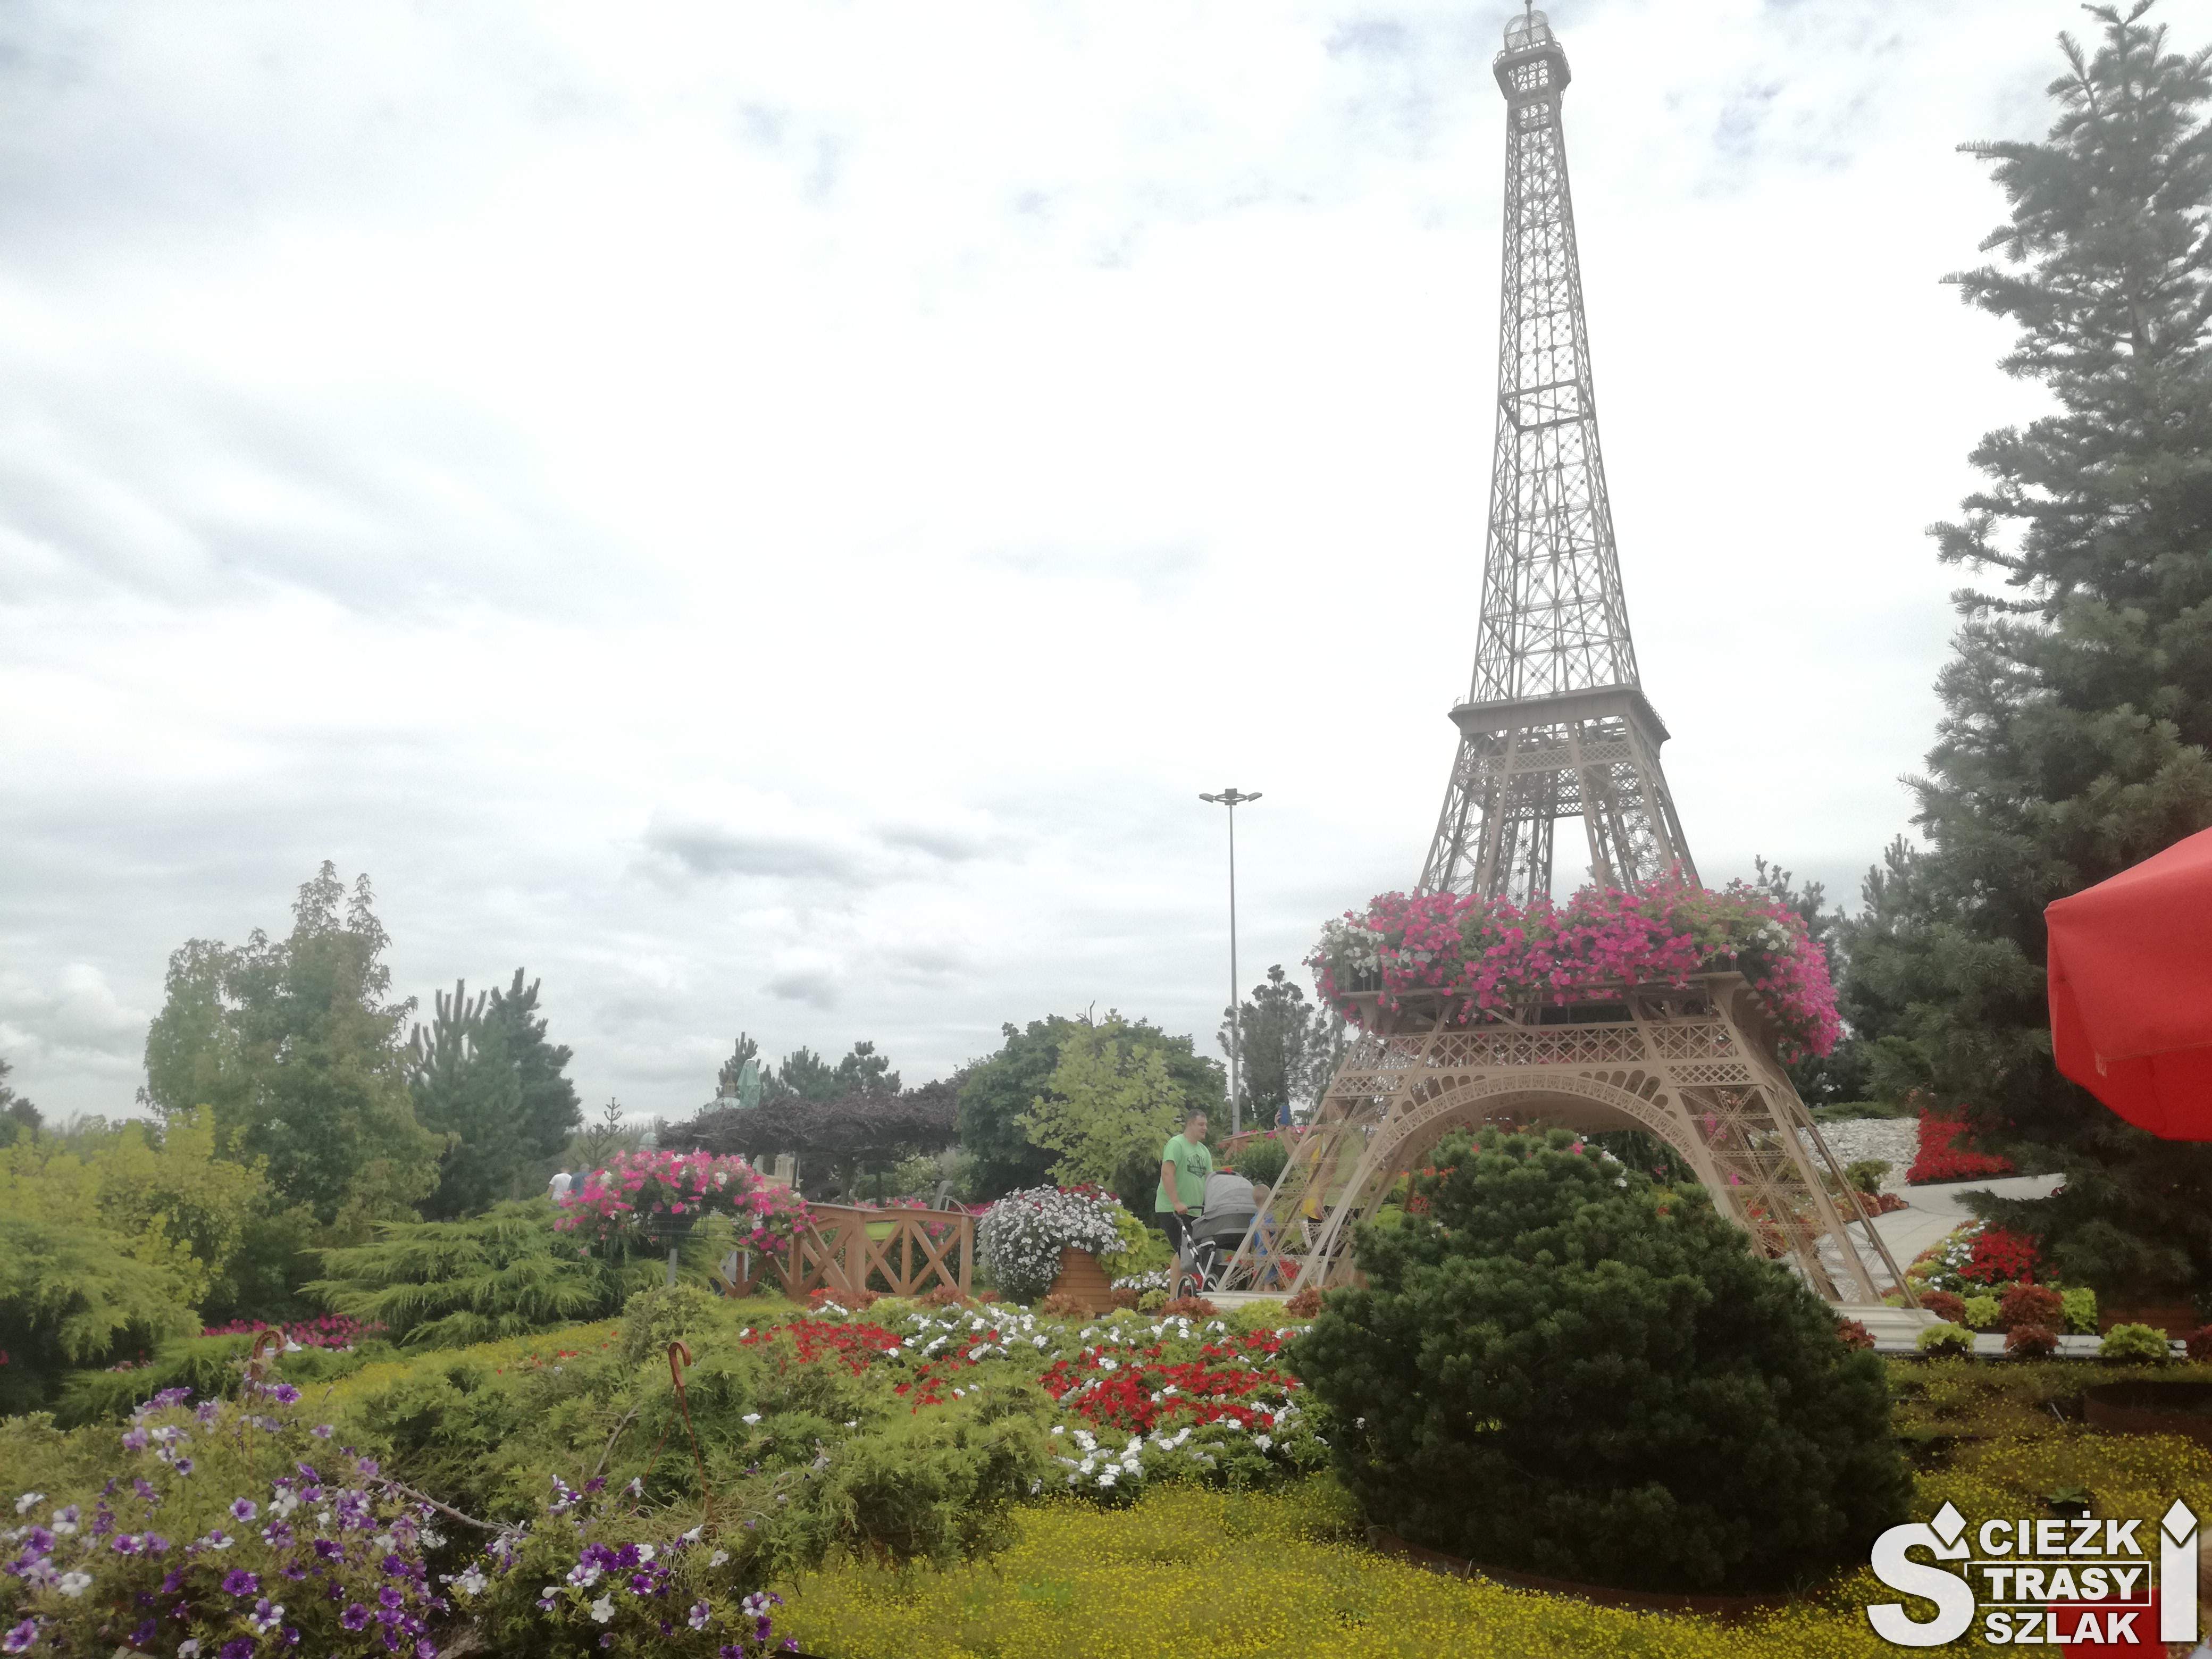 Wysoka Wieża Eiffla w arboretum w Kłodzku zminiaturyzowana do kilkunastu metrów w otoczeniu kwiatów